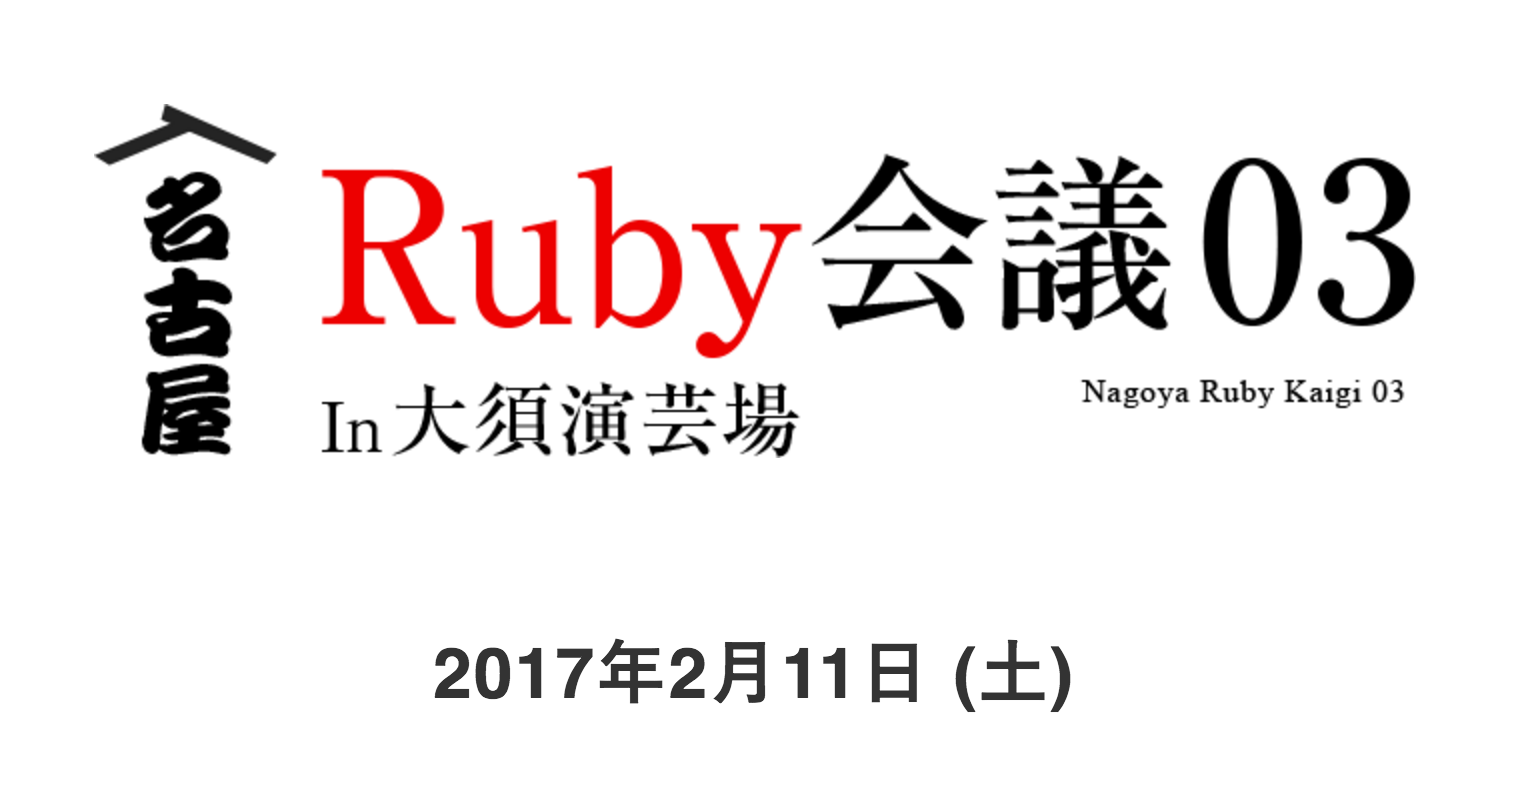 名古屋Ruby会議03に協賛します - 株式会社永和システムマネジメント アジャイル事業部